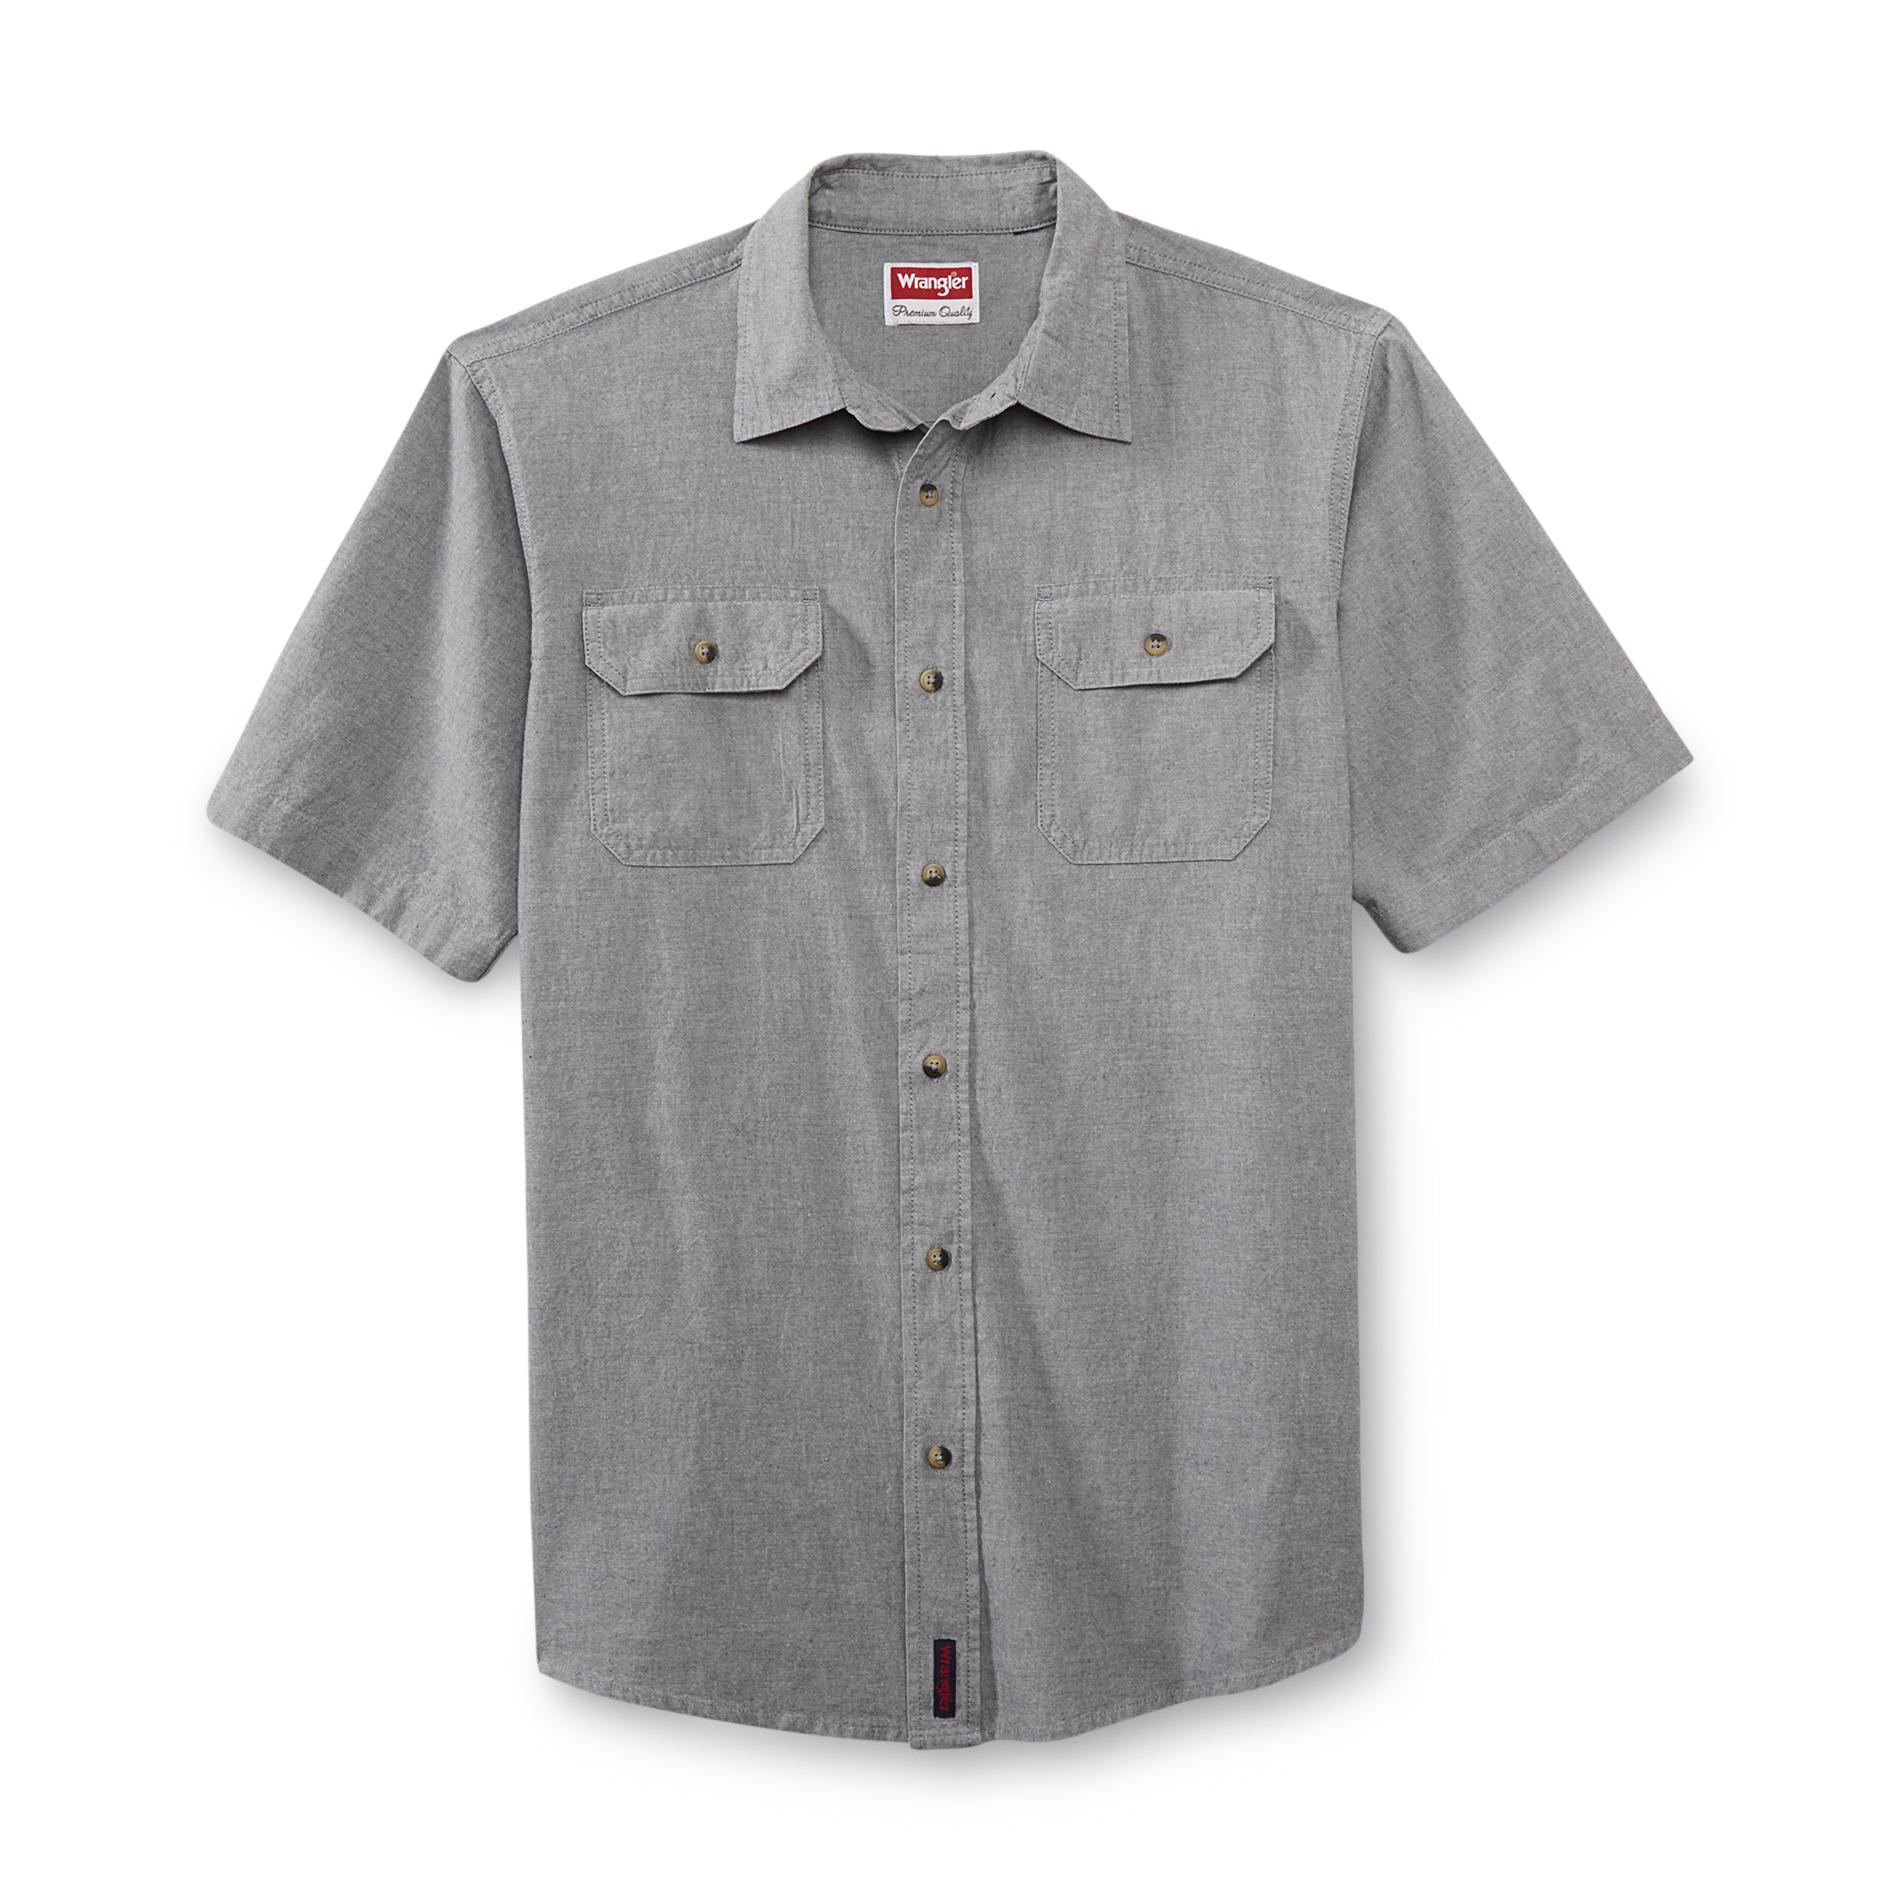 Wrangler Men's Short-Sleeve Shirt